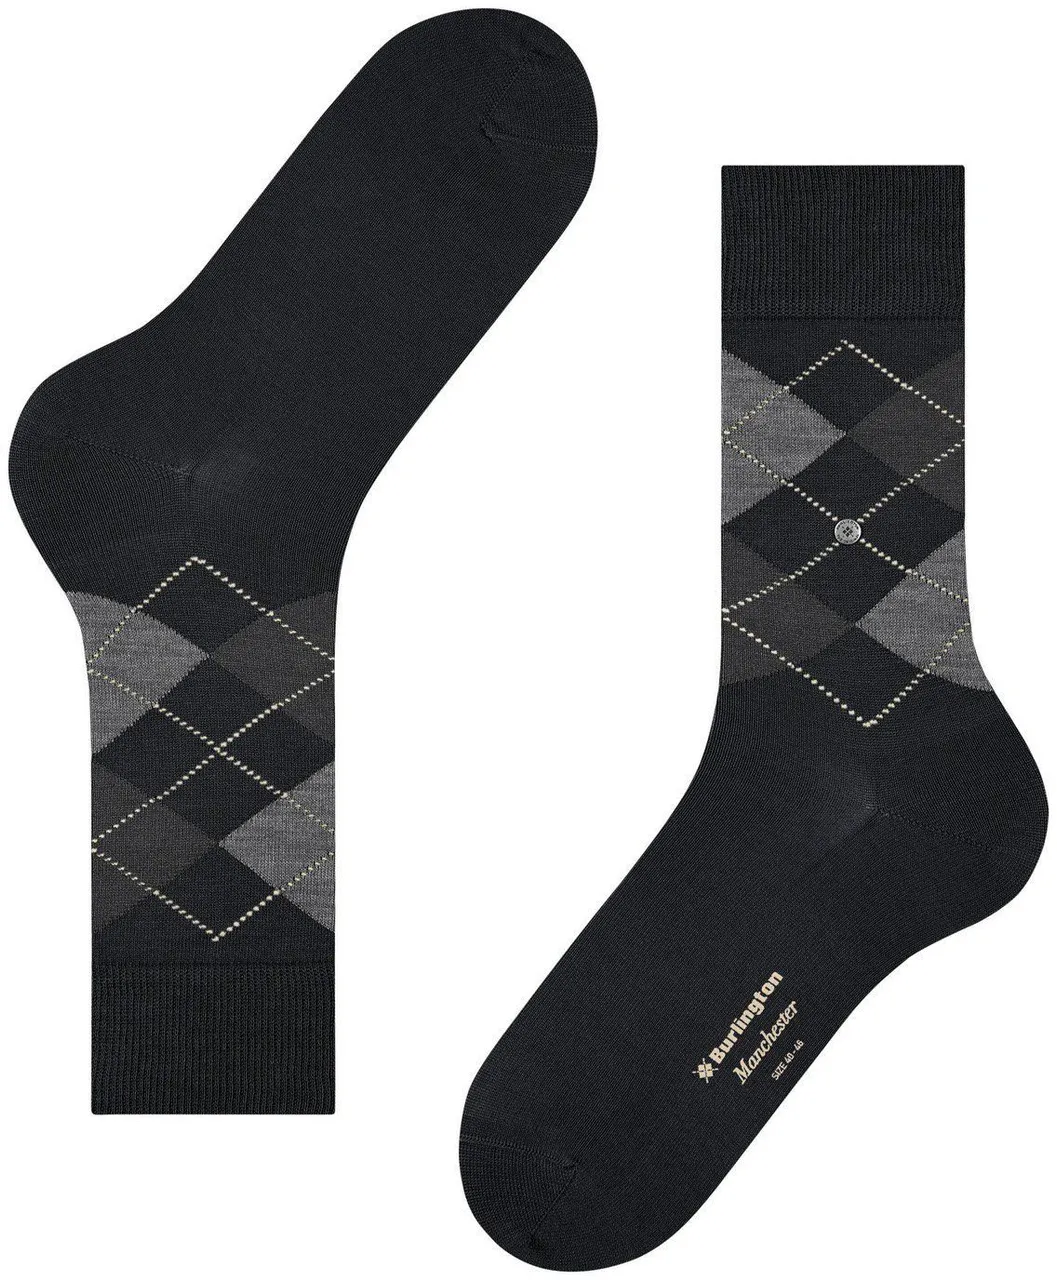 Burlington Manchester Socks Checkered 3000 Black